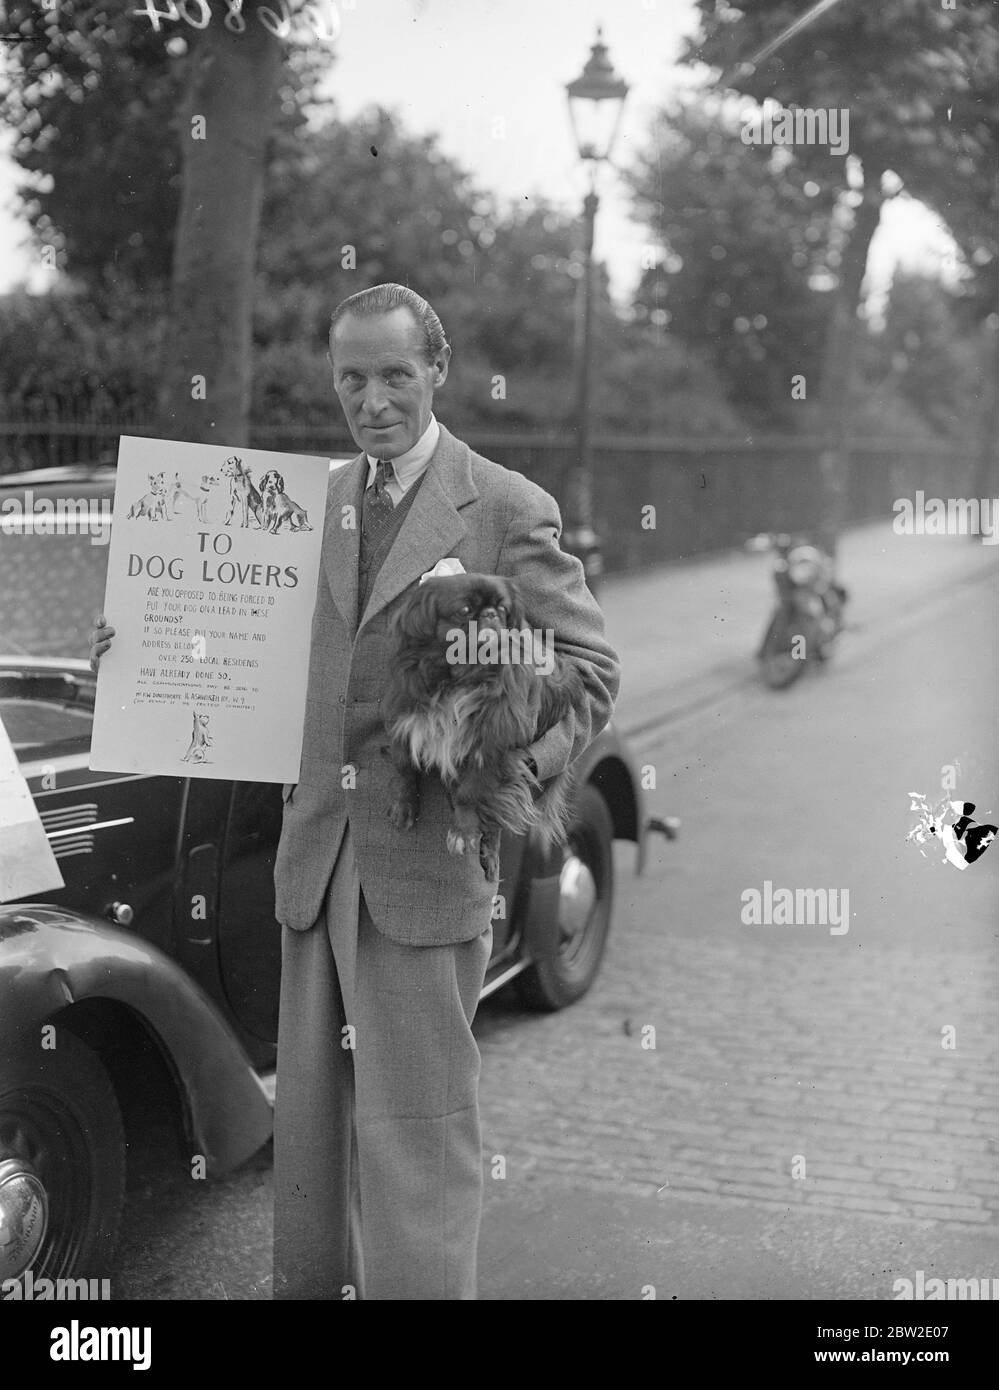 Hundebesitzer unterschreiben die Petition von F.W Donisthorpe vor den Gärten von Paddington, London. Hunde sind in den Gärten verboten, es sei denn, sie sind an der Leine. F.W Donisthorpe, der berühmte Tennisspieler, hat einen Streichen in Angriff genommen, um das Verbot aufzuheben. Seine erste Auflage wurde vom rat abgelehnt. 24 Juli 1937 Stockfoto